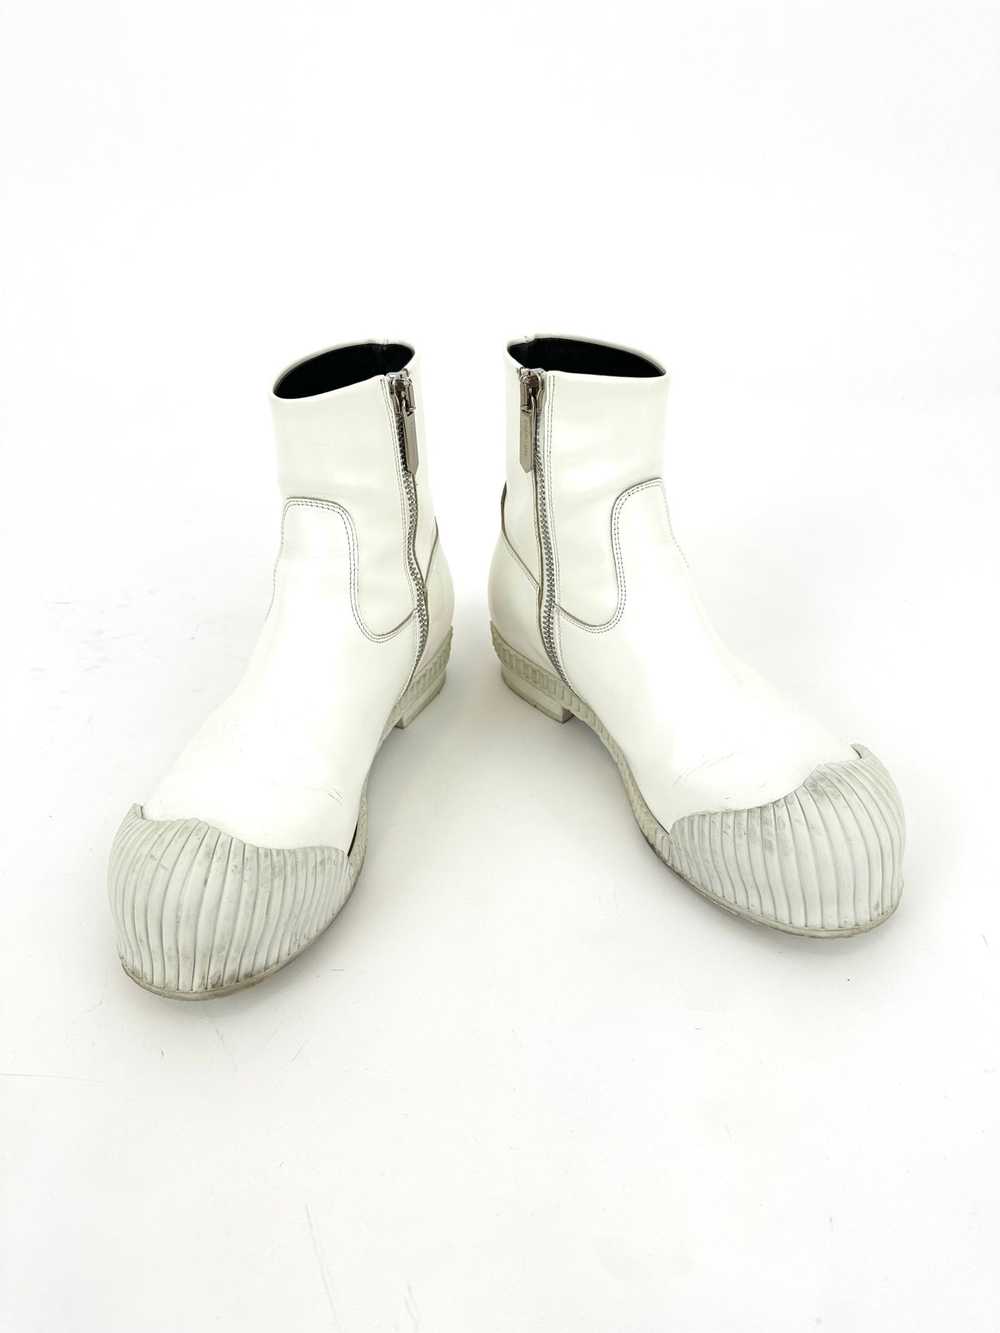 Calvin Klein 205W39NYC Deicine Spazzolato Boots* - image 9